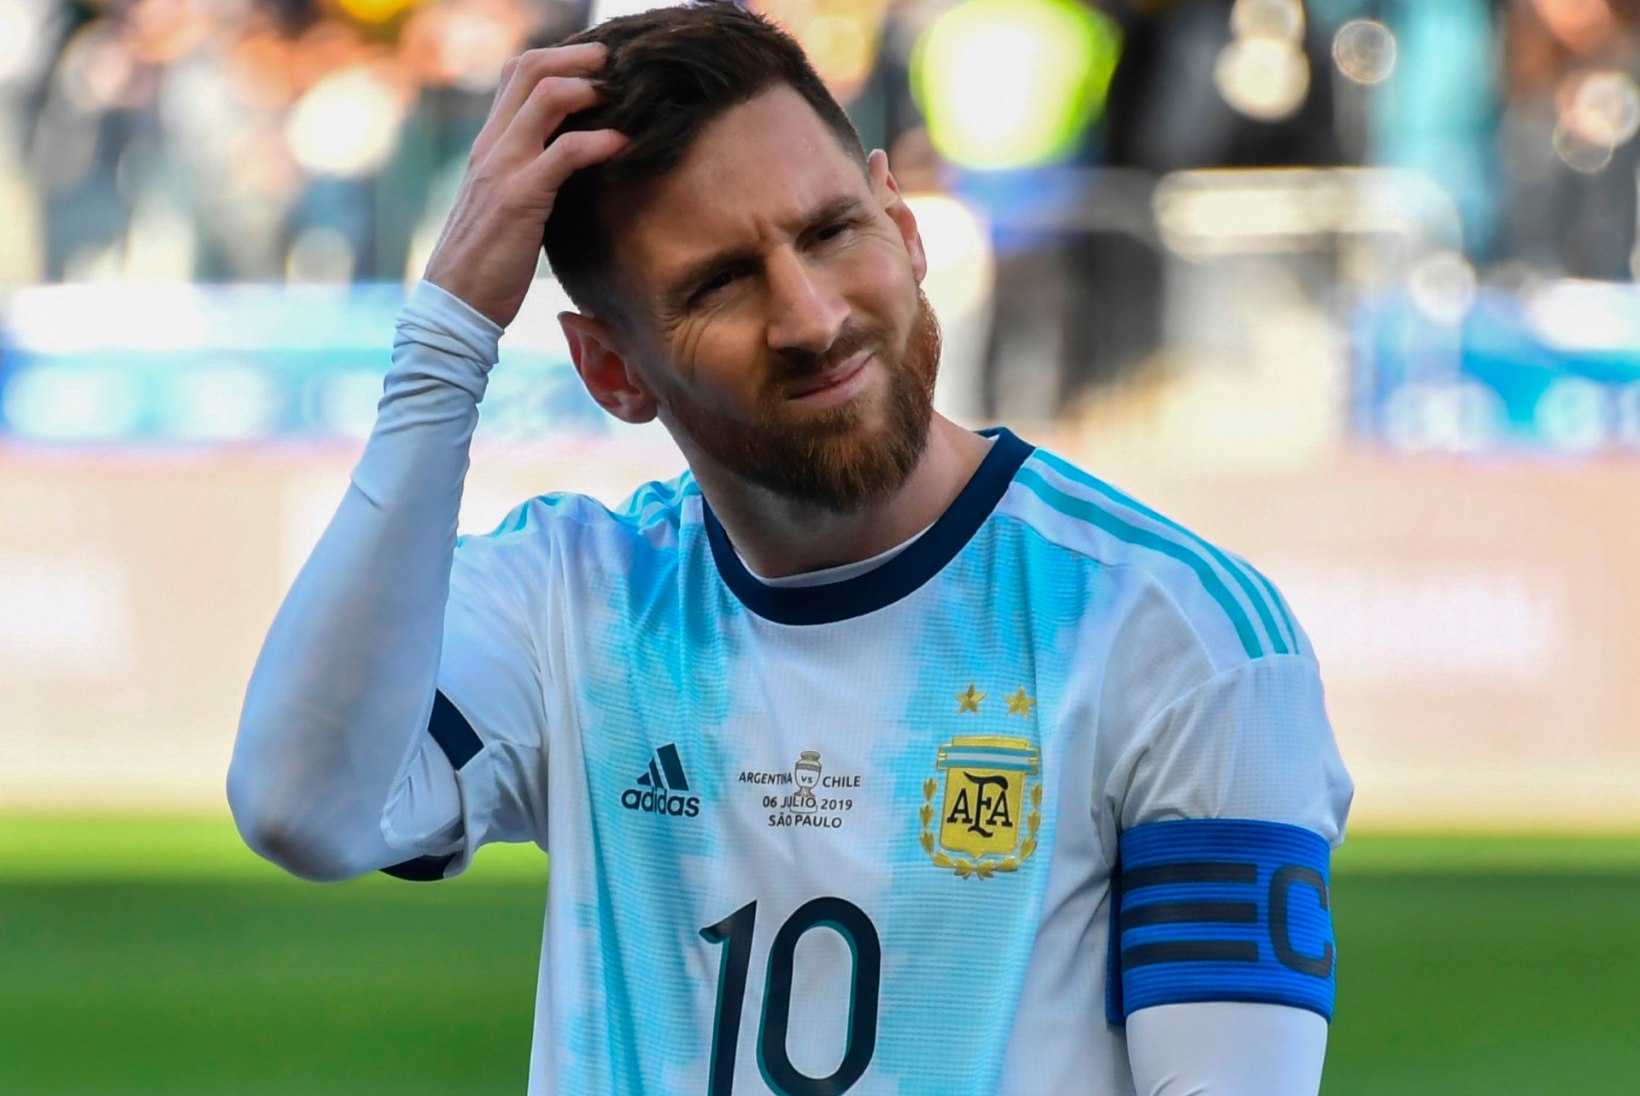 ÜLLATUS! Lionel Messi ei saanud Pep Guardiolalt oodatud kiitust